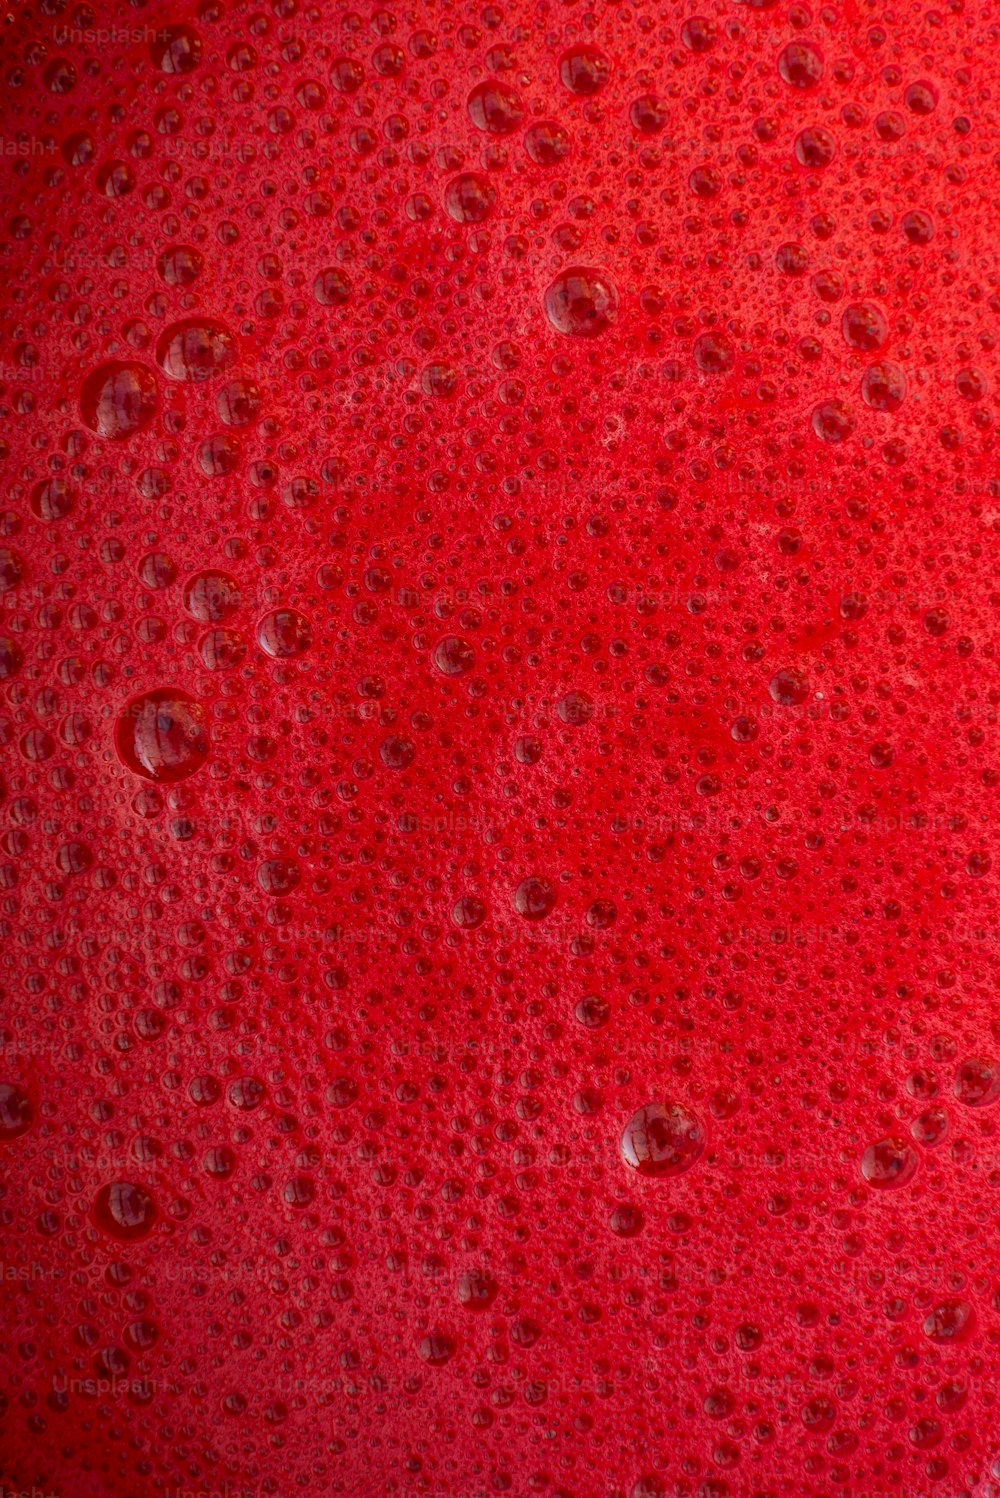 um close up de uma substância vermelha com gotas de água